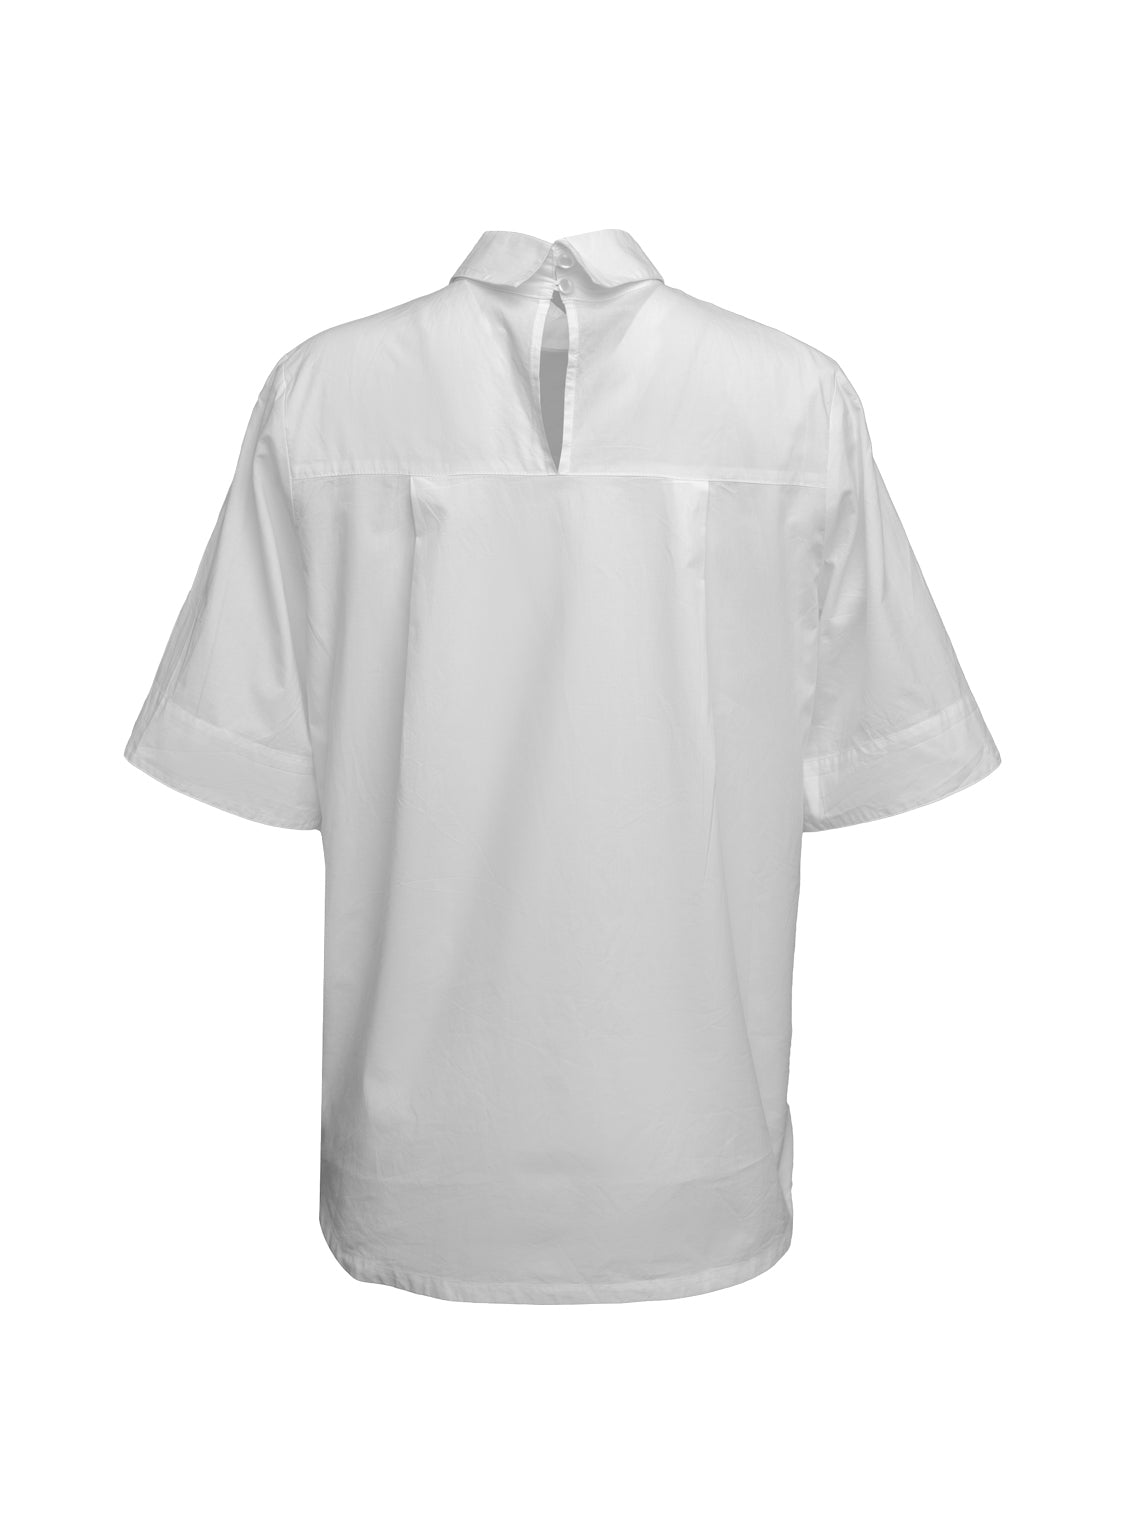 Bluse aus 100% feiner Baumwolle, schmalem Kragen mit Knopfverschluss auf der Rückseite und breiten Ärmelumschlägen